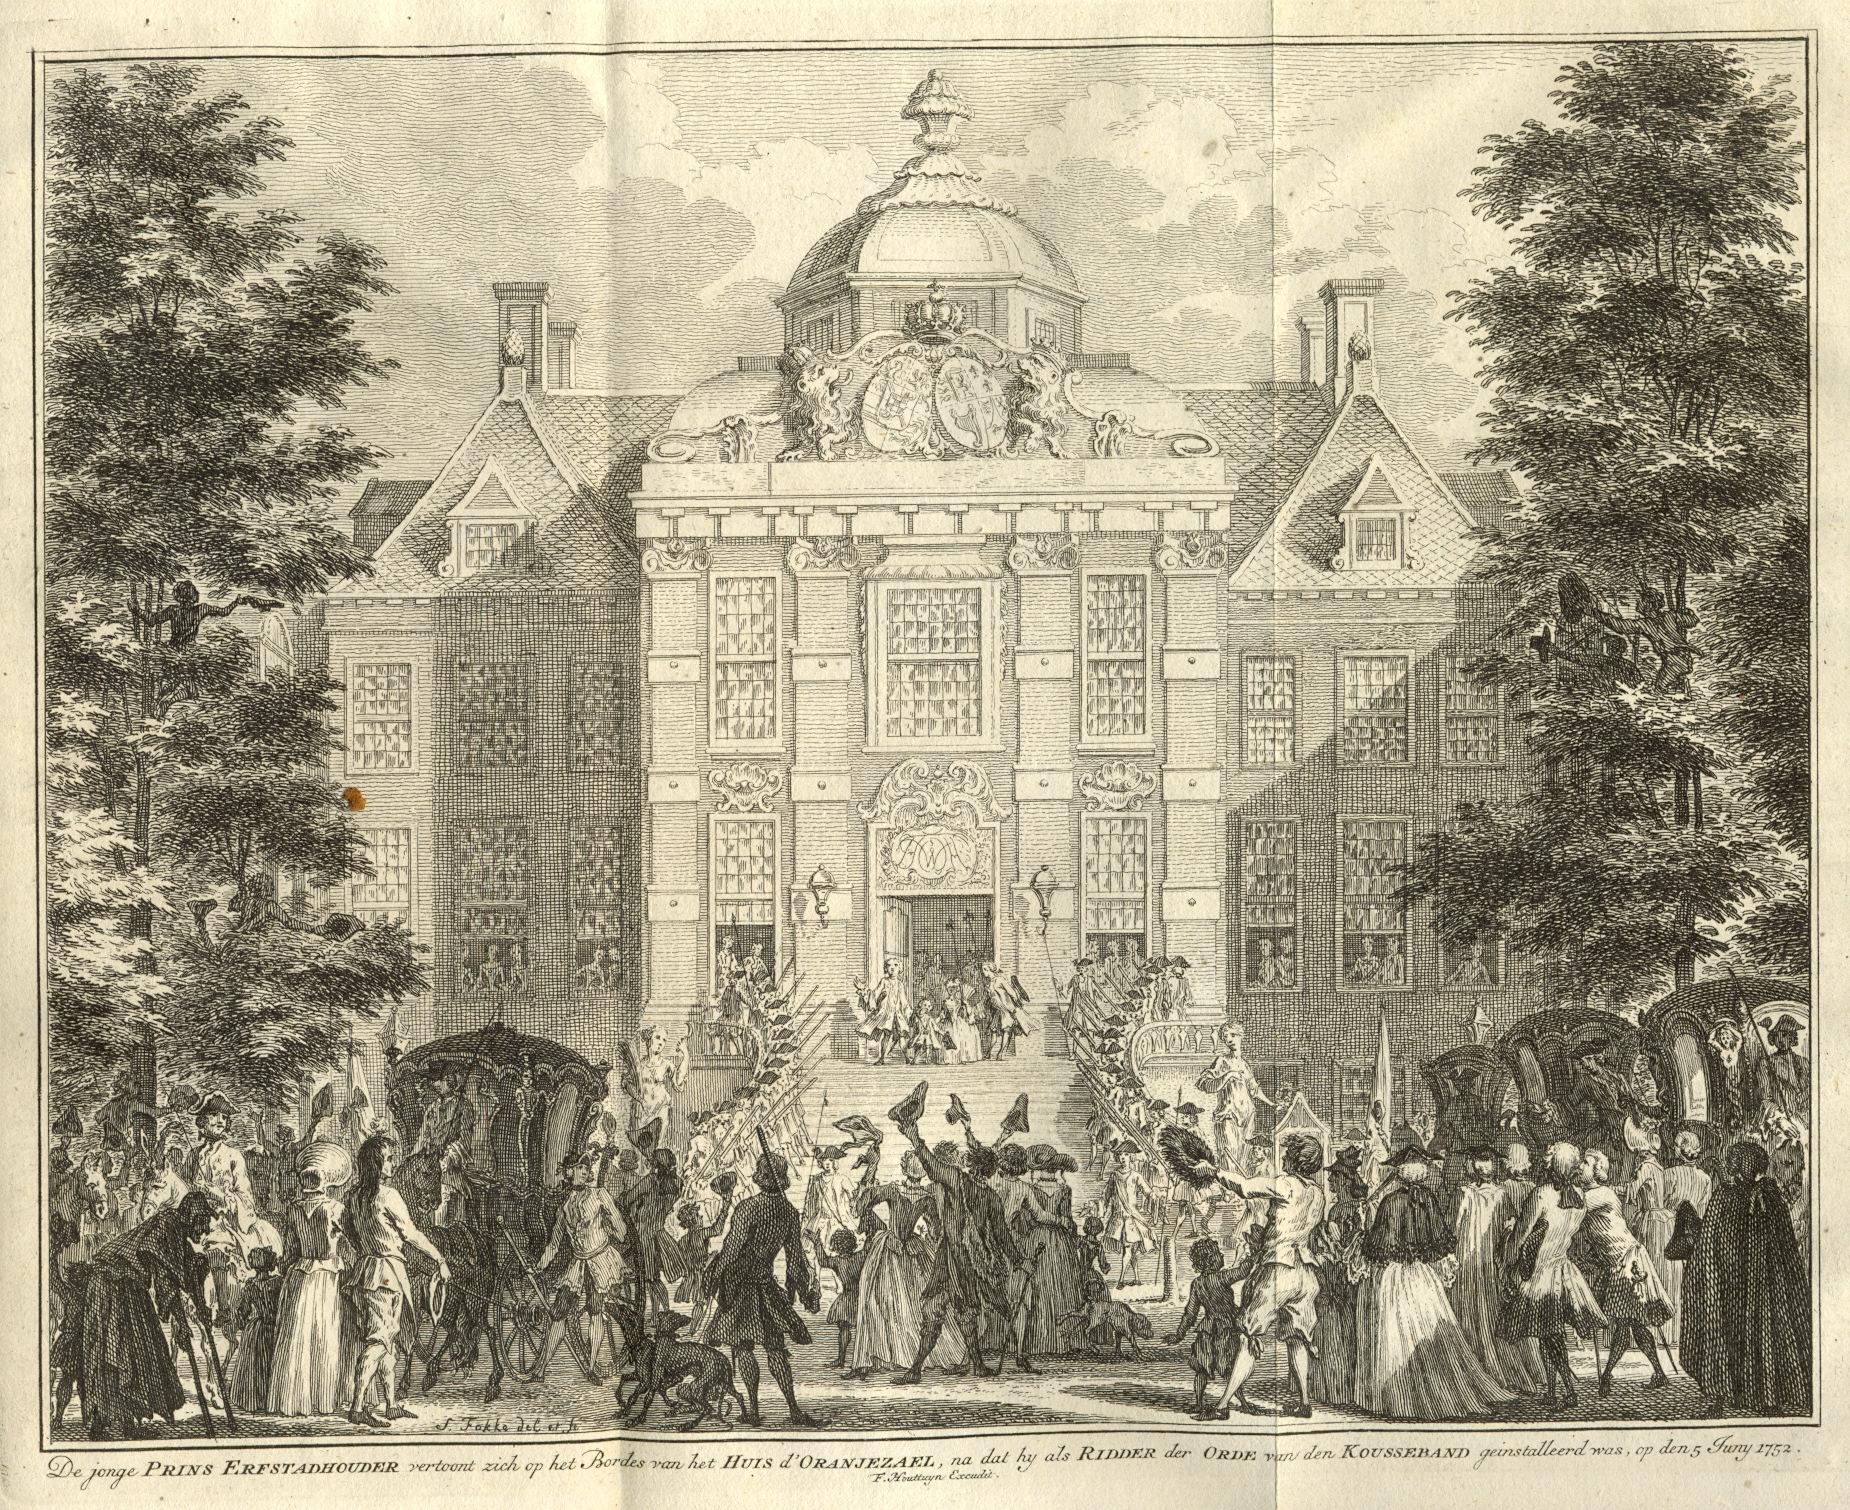 Feestvreugde bij het toekennen van de orde van de Kouseband aan de jonge prins van Oranje, 1752.